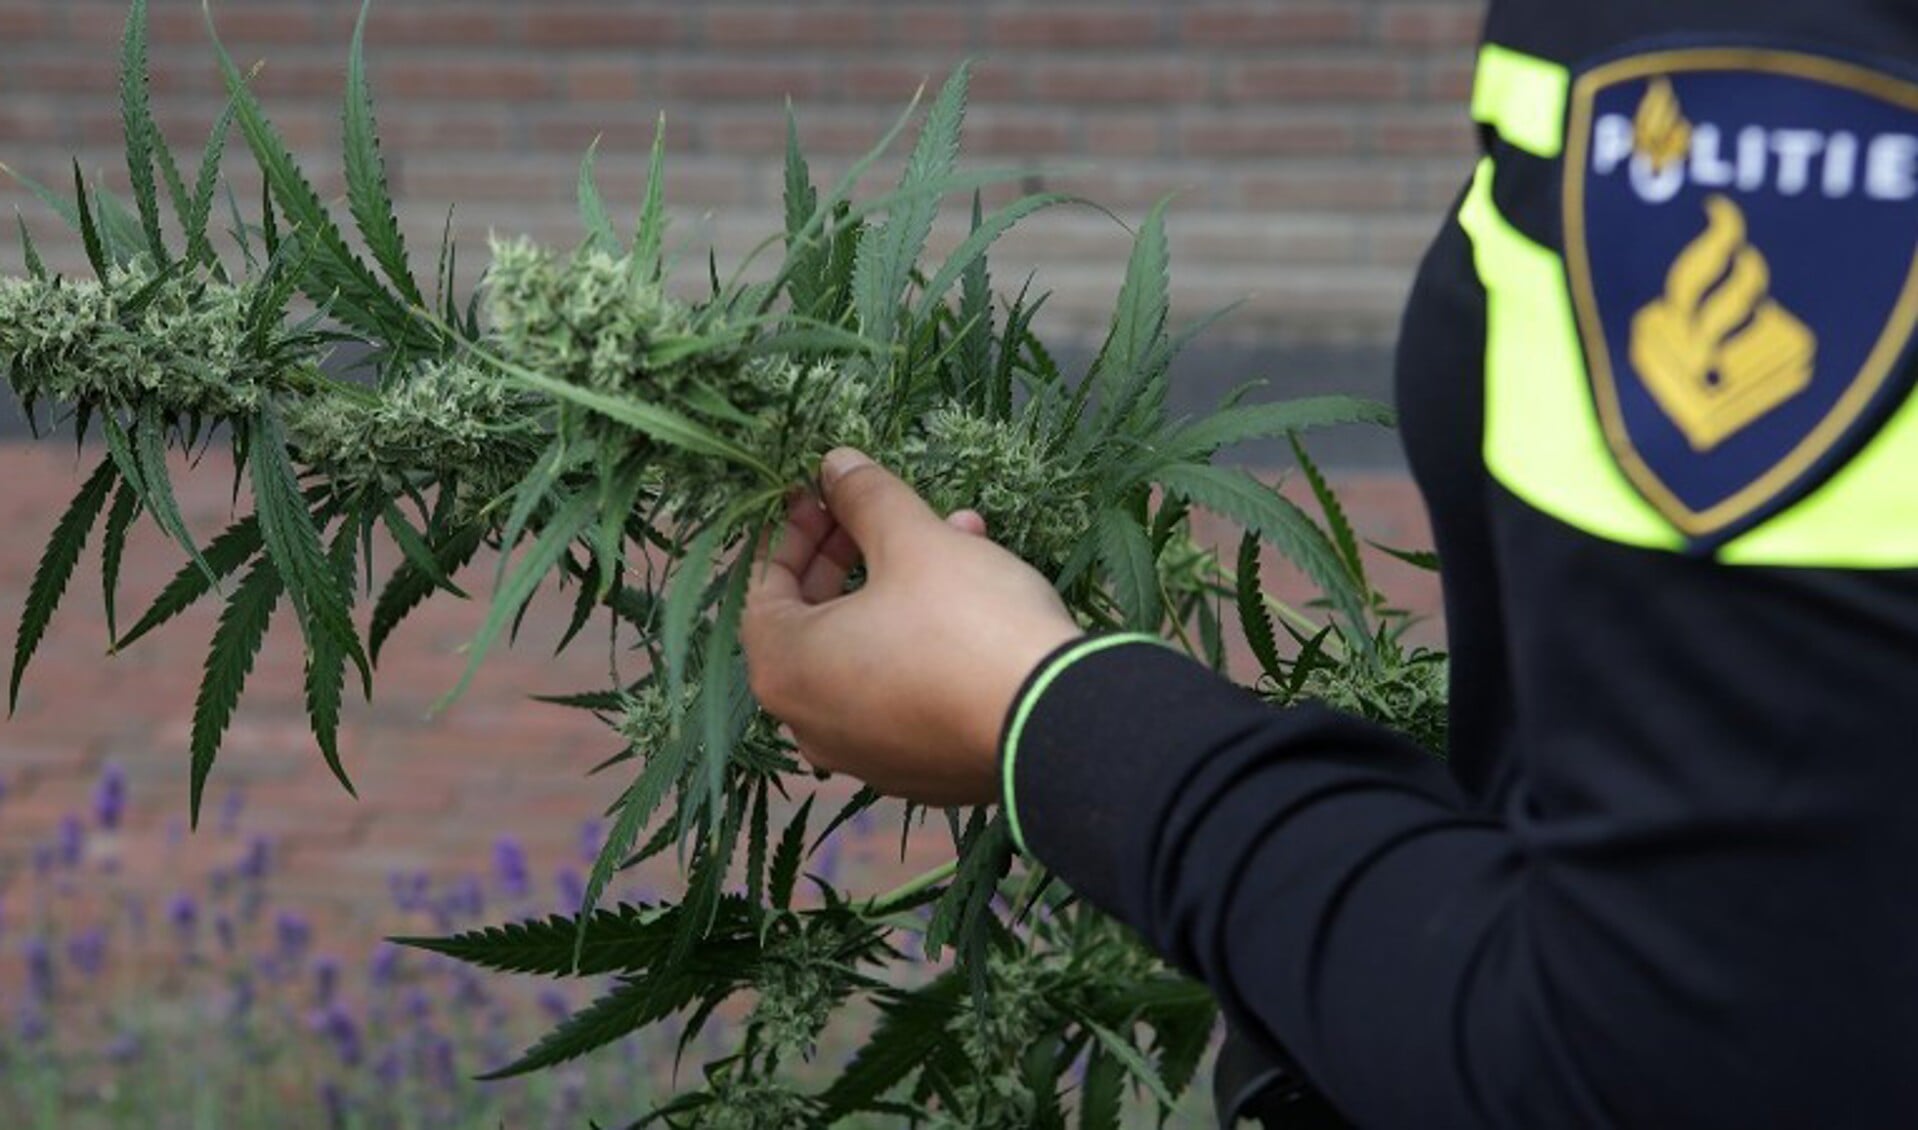 De politie heeft in Overloon een hennepknipperij opgerold.